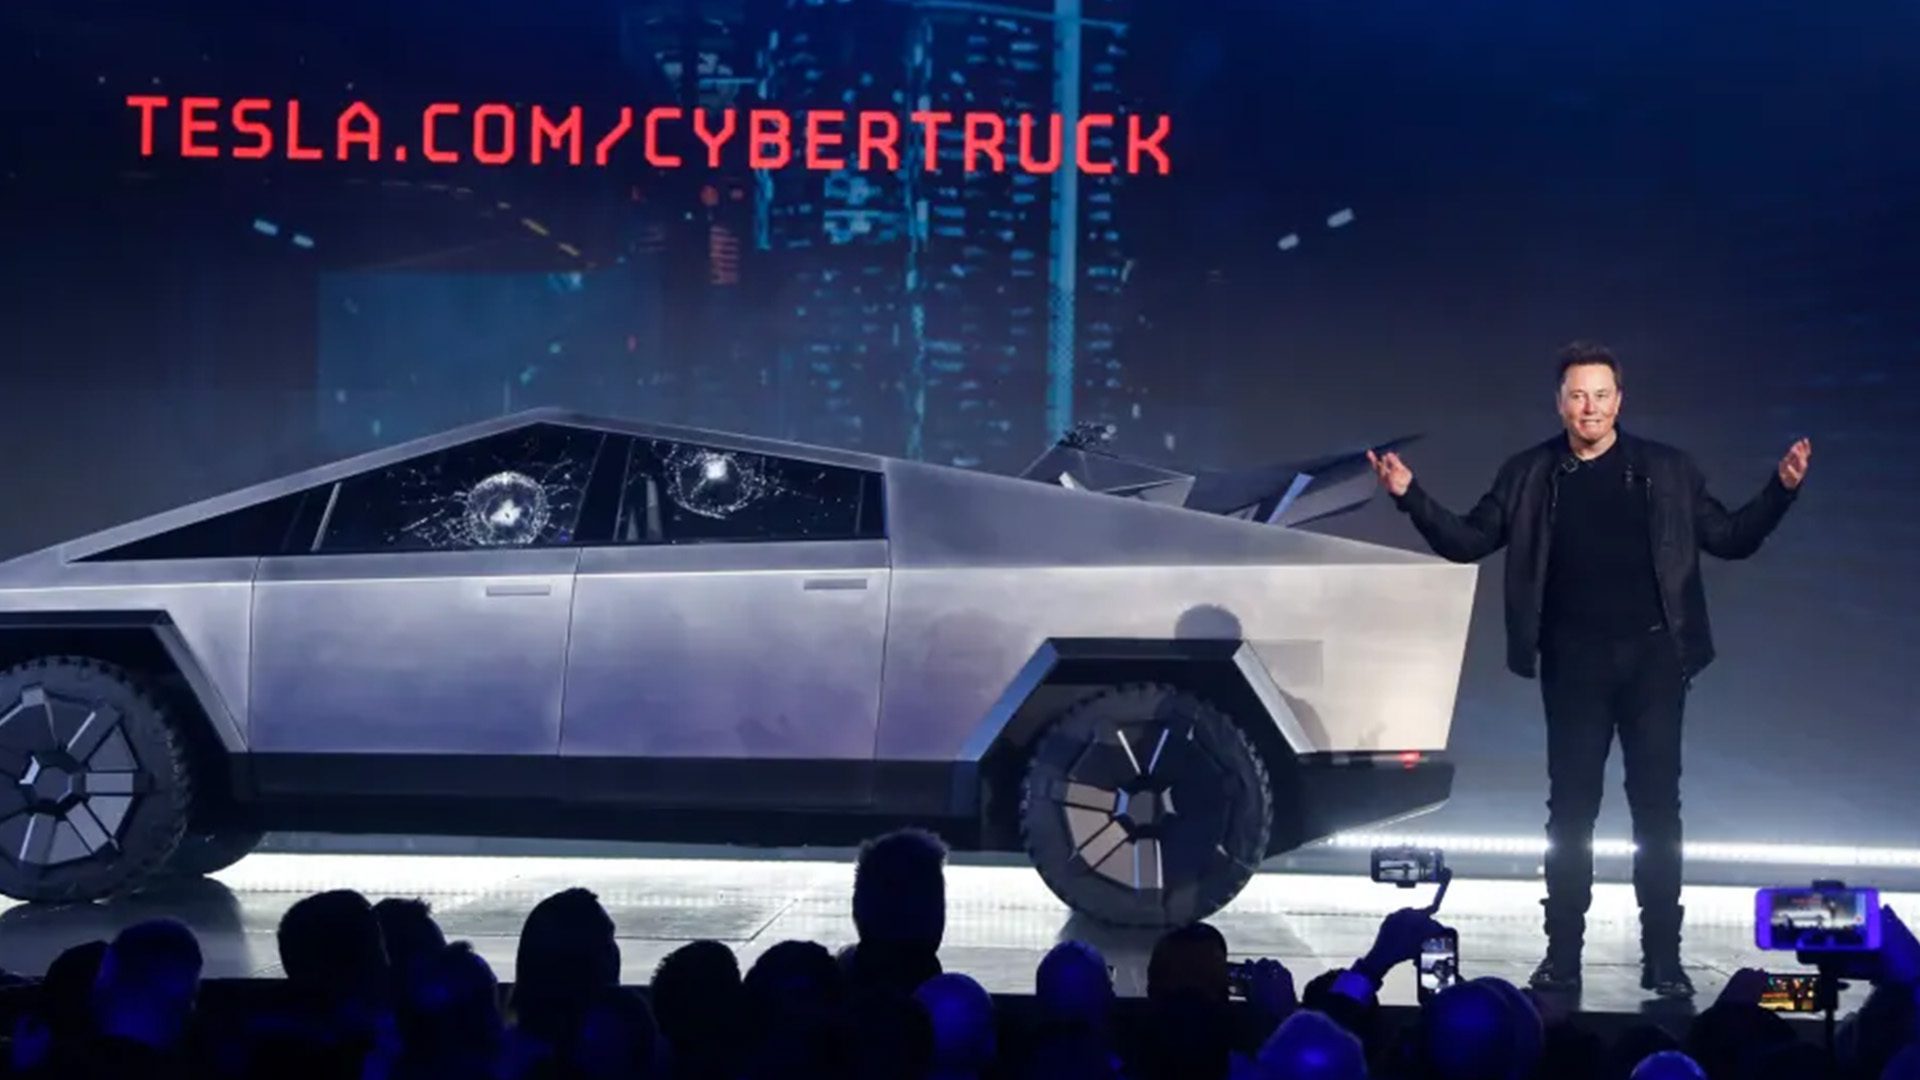 Tesla CEO Elon Musk introducing the Cybertruck at Tesla’s design studio in 2019